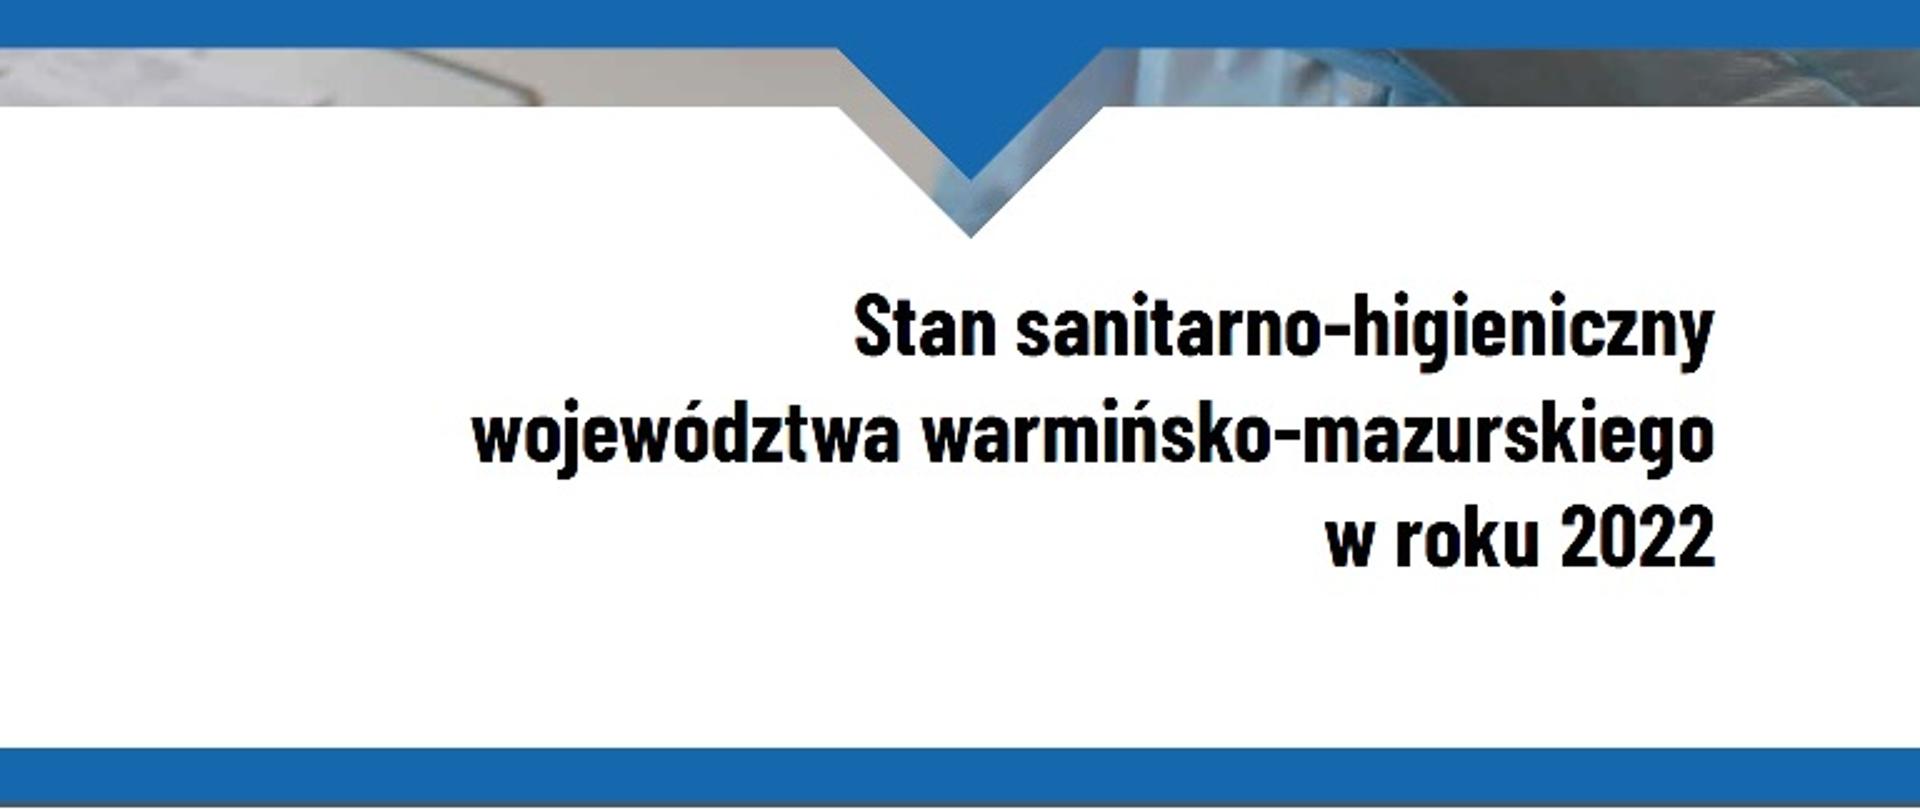 fragment okładki raportu z tytułem "Stan sanitarno-higieniczny województwa warmińsko-mazurskiego w roku 2022"